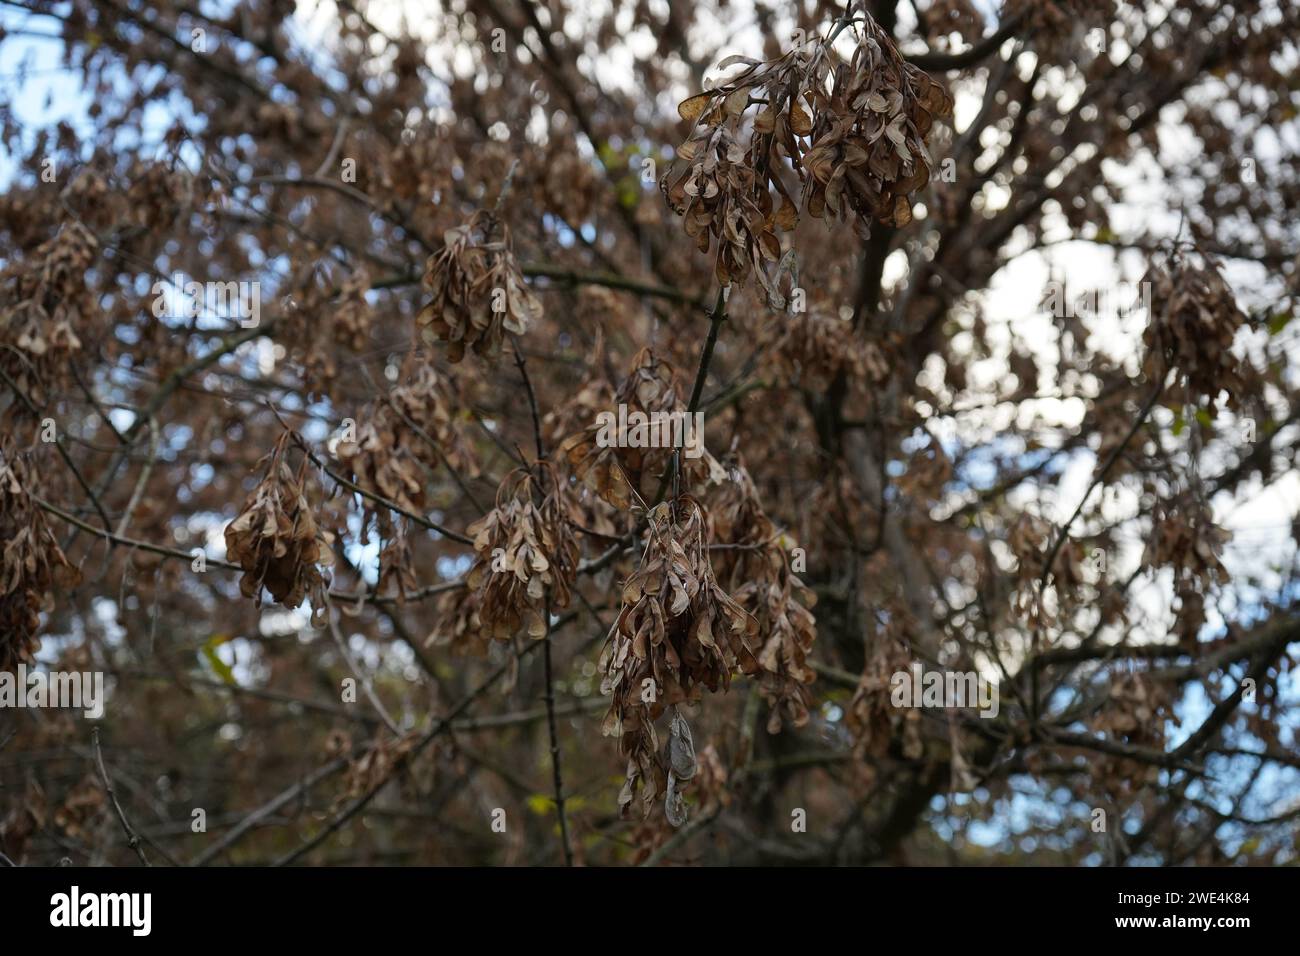 Box elder, boxelder maple, Manitoba maple or ash-leaved maple(Acer negundo) Stock Photo